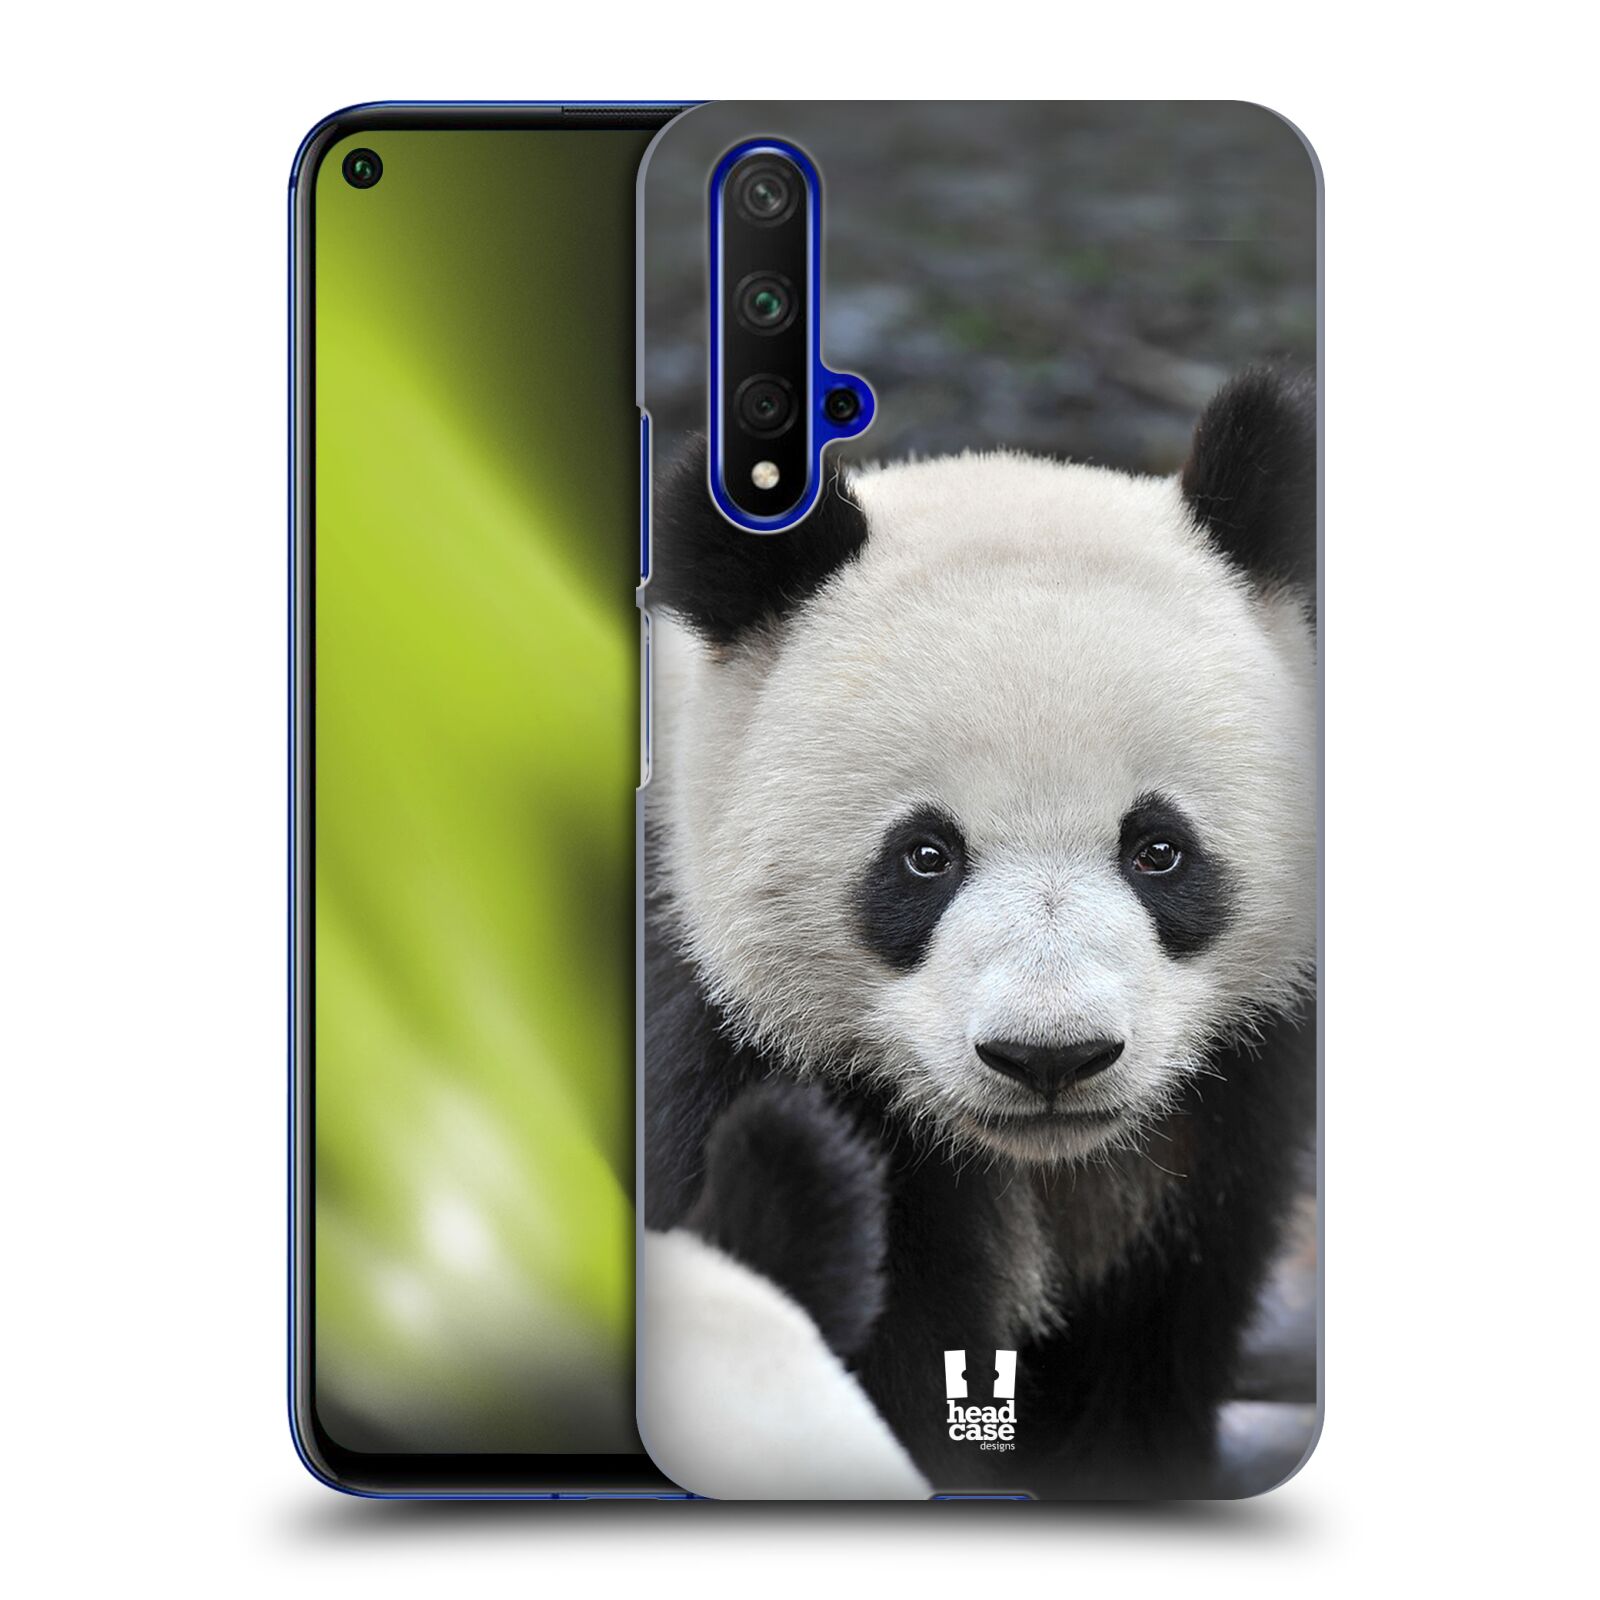 Zadní obal pro mobil Honor 20 - HEAD CASE - Svět zvířat medvěd panda